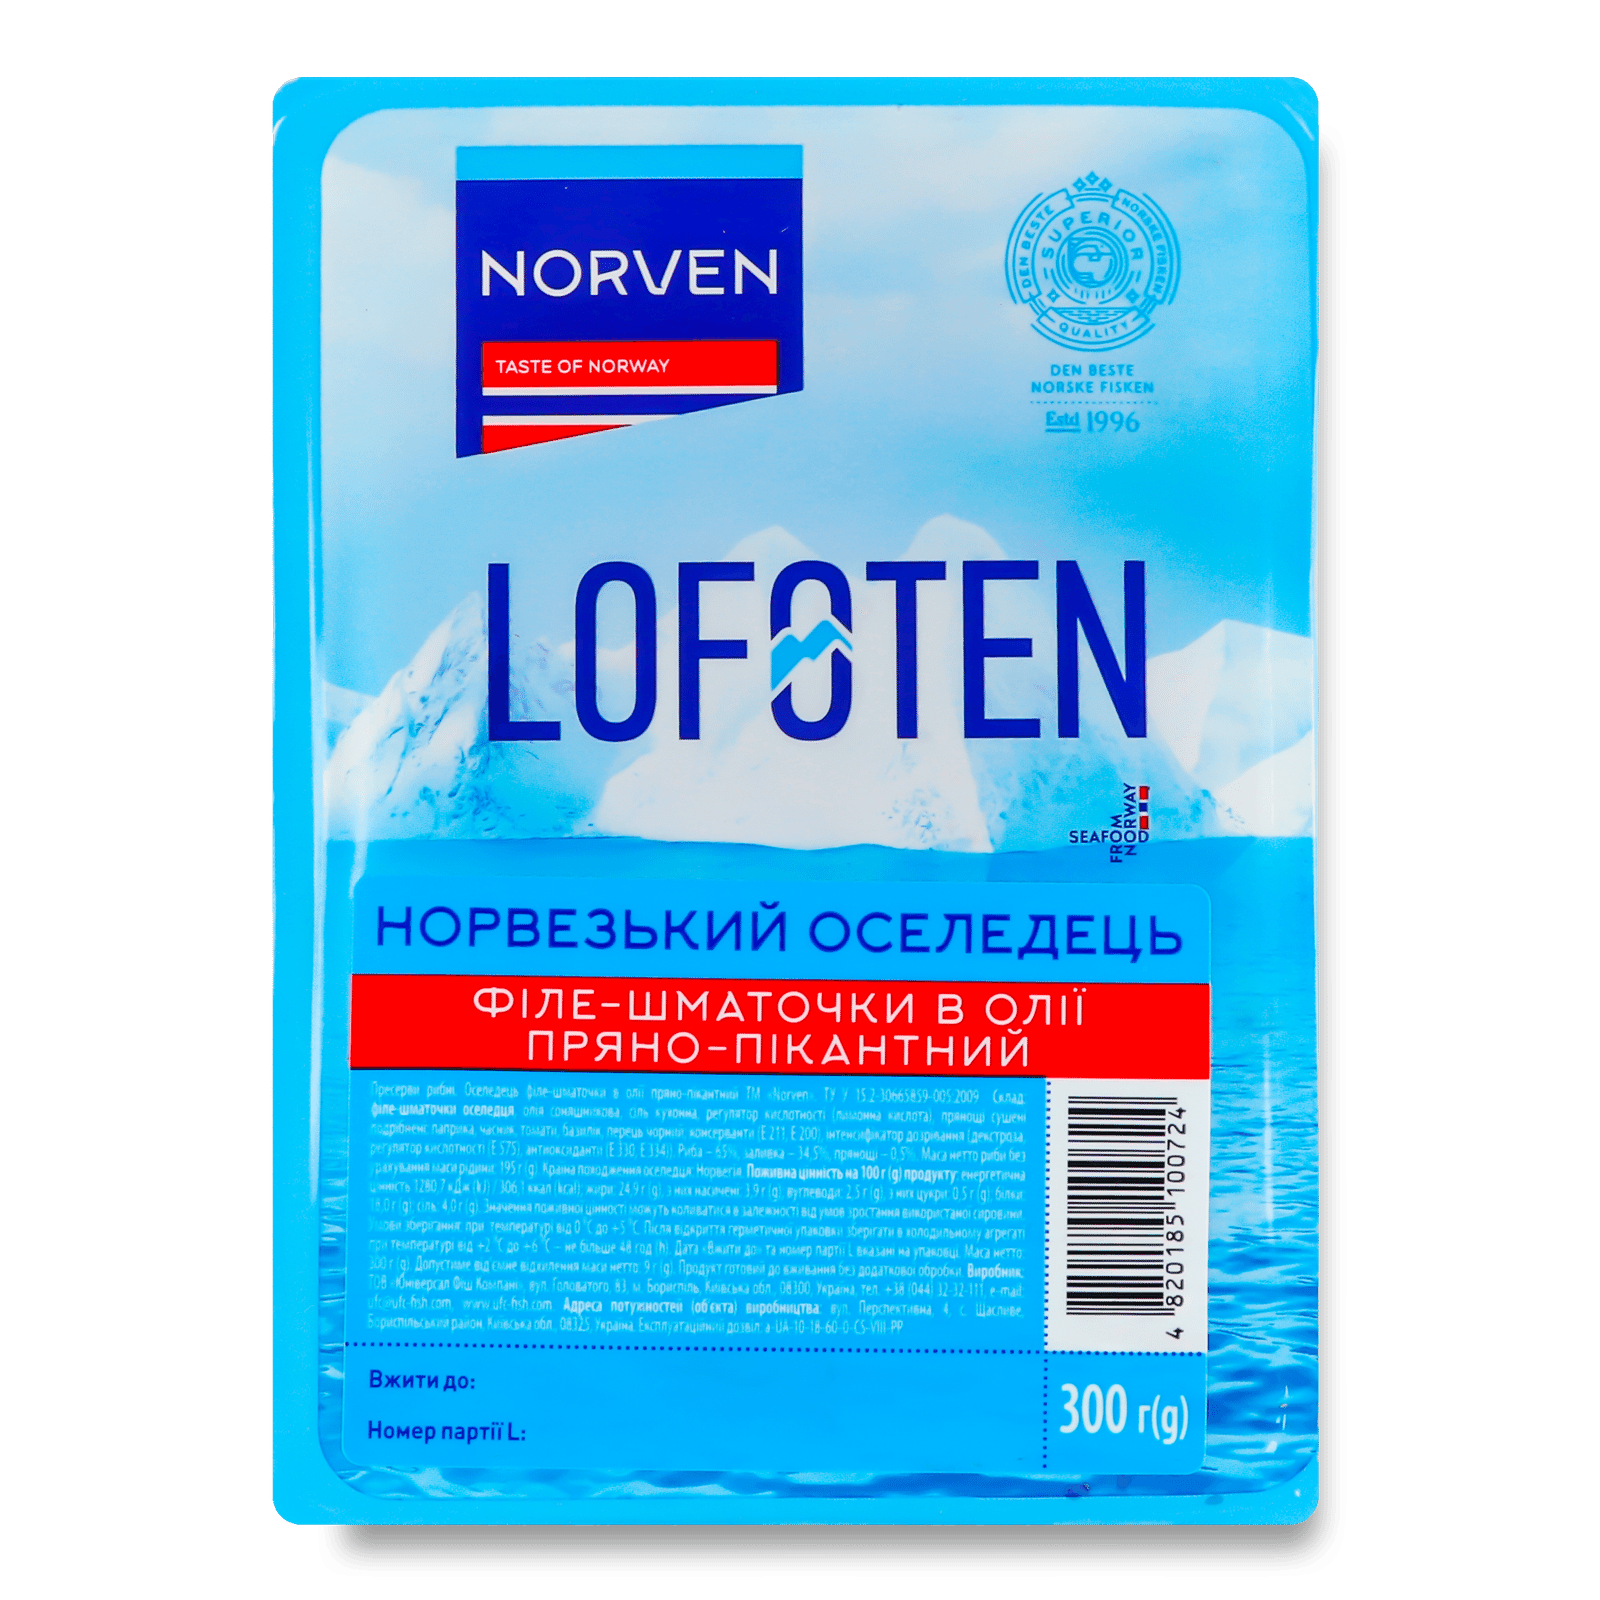 Оселедець Norven пряно-пікантний в олії - 1